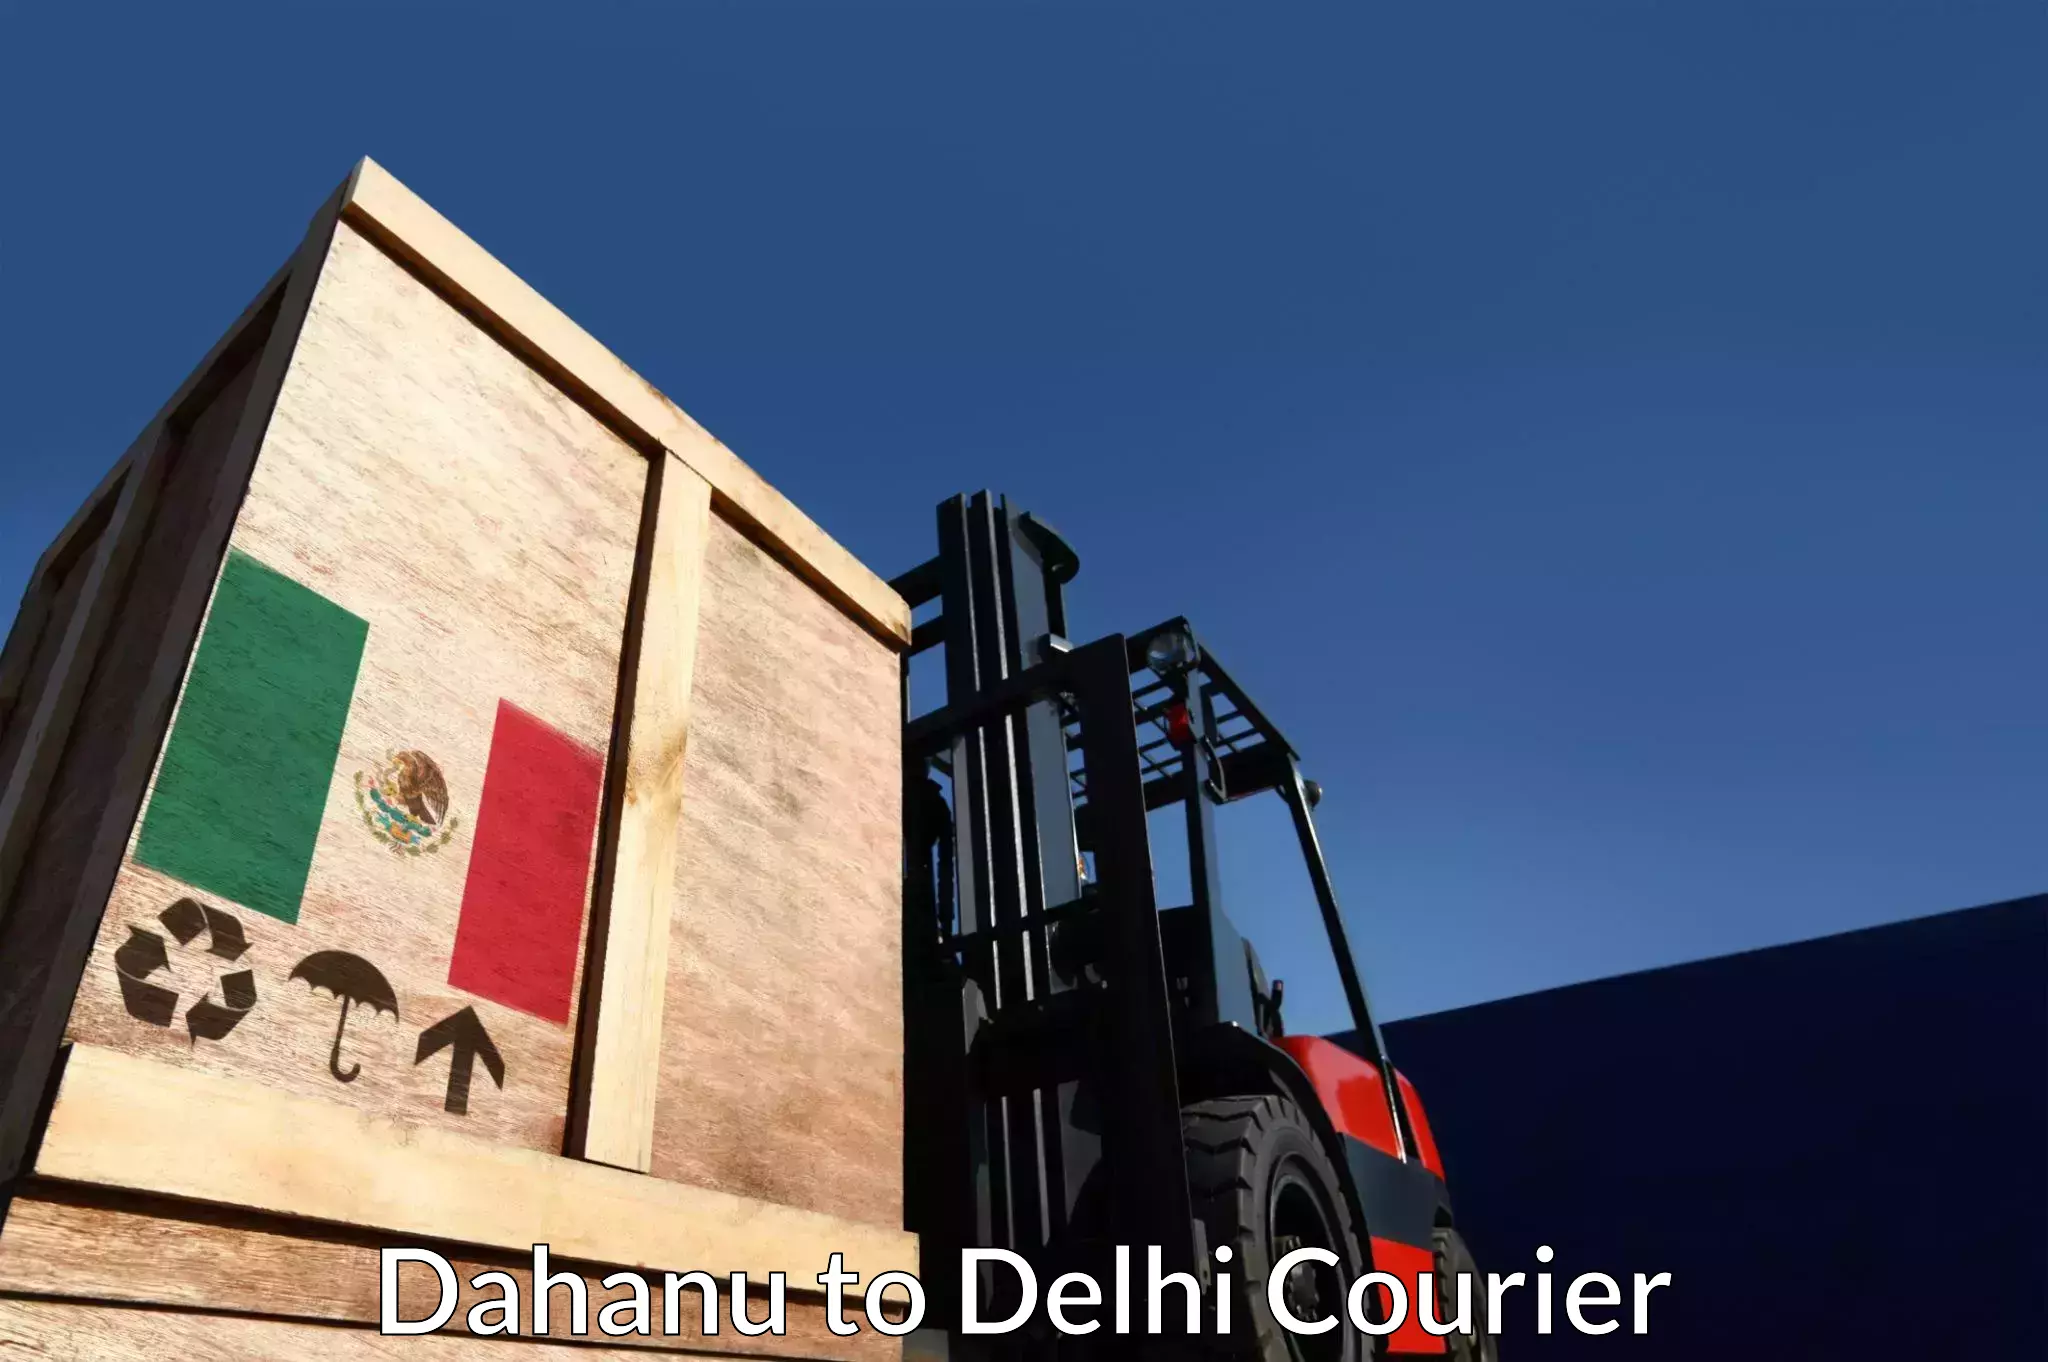 Global logistics network Dahanu to East Delhi